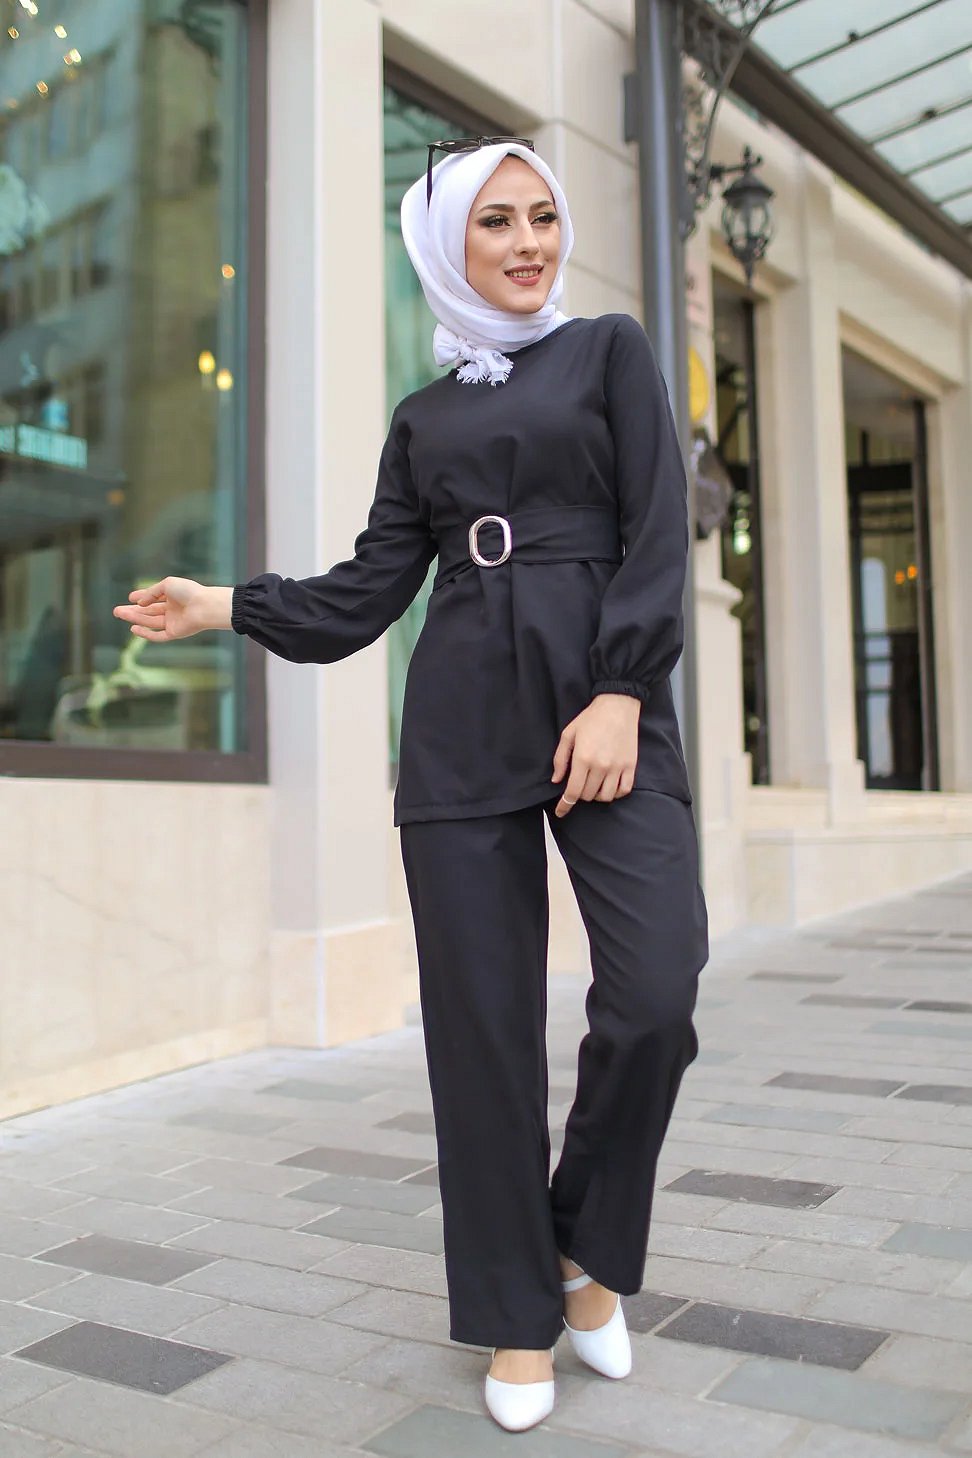 Ensemble femme : tunique et pantalon avec ceinture (Vêtement femme voilée)  - Couleur noir - Prêt à porter et accessoires sur